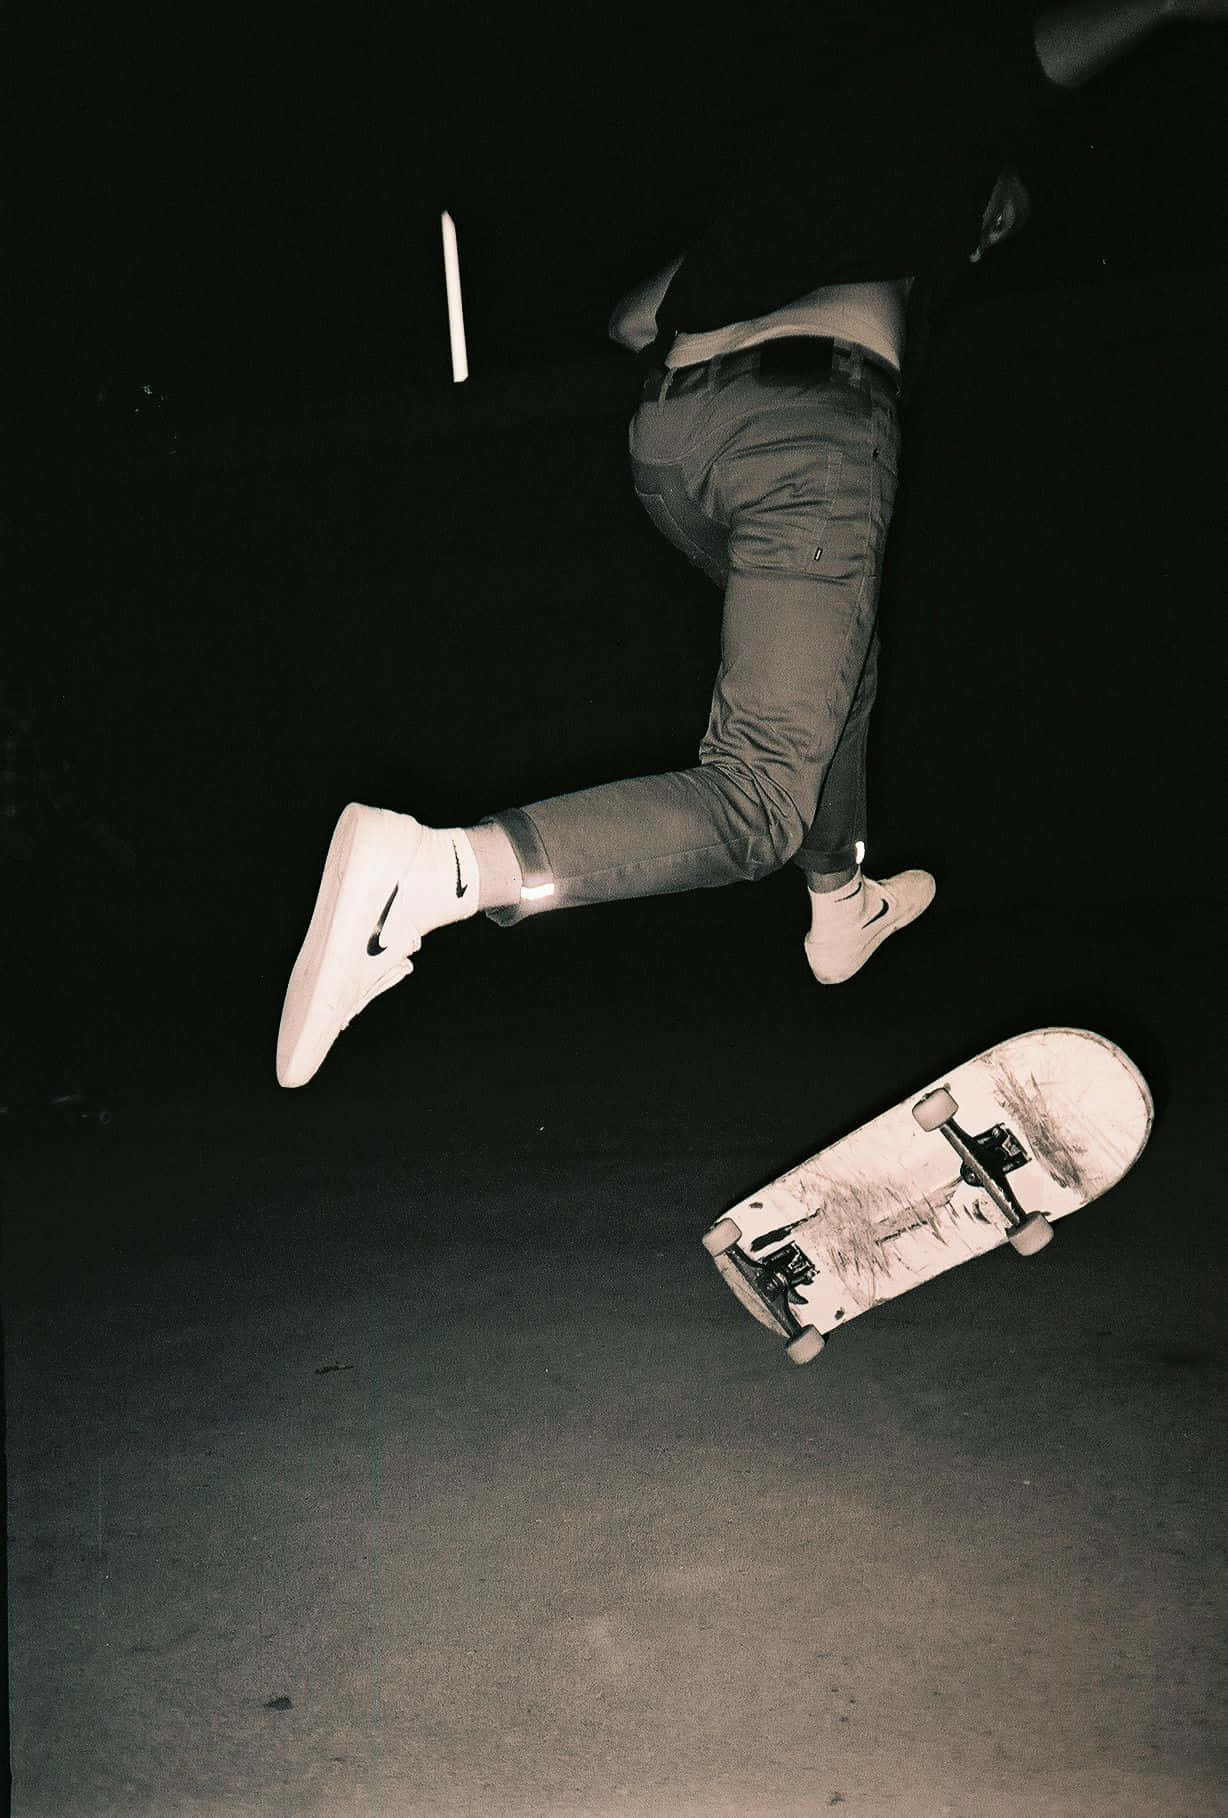 Unuomo Sta Facendo Un Trucco Su Uno Skateboard.